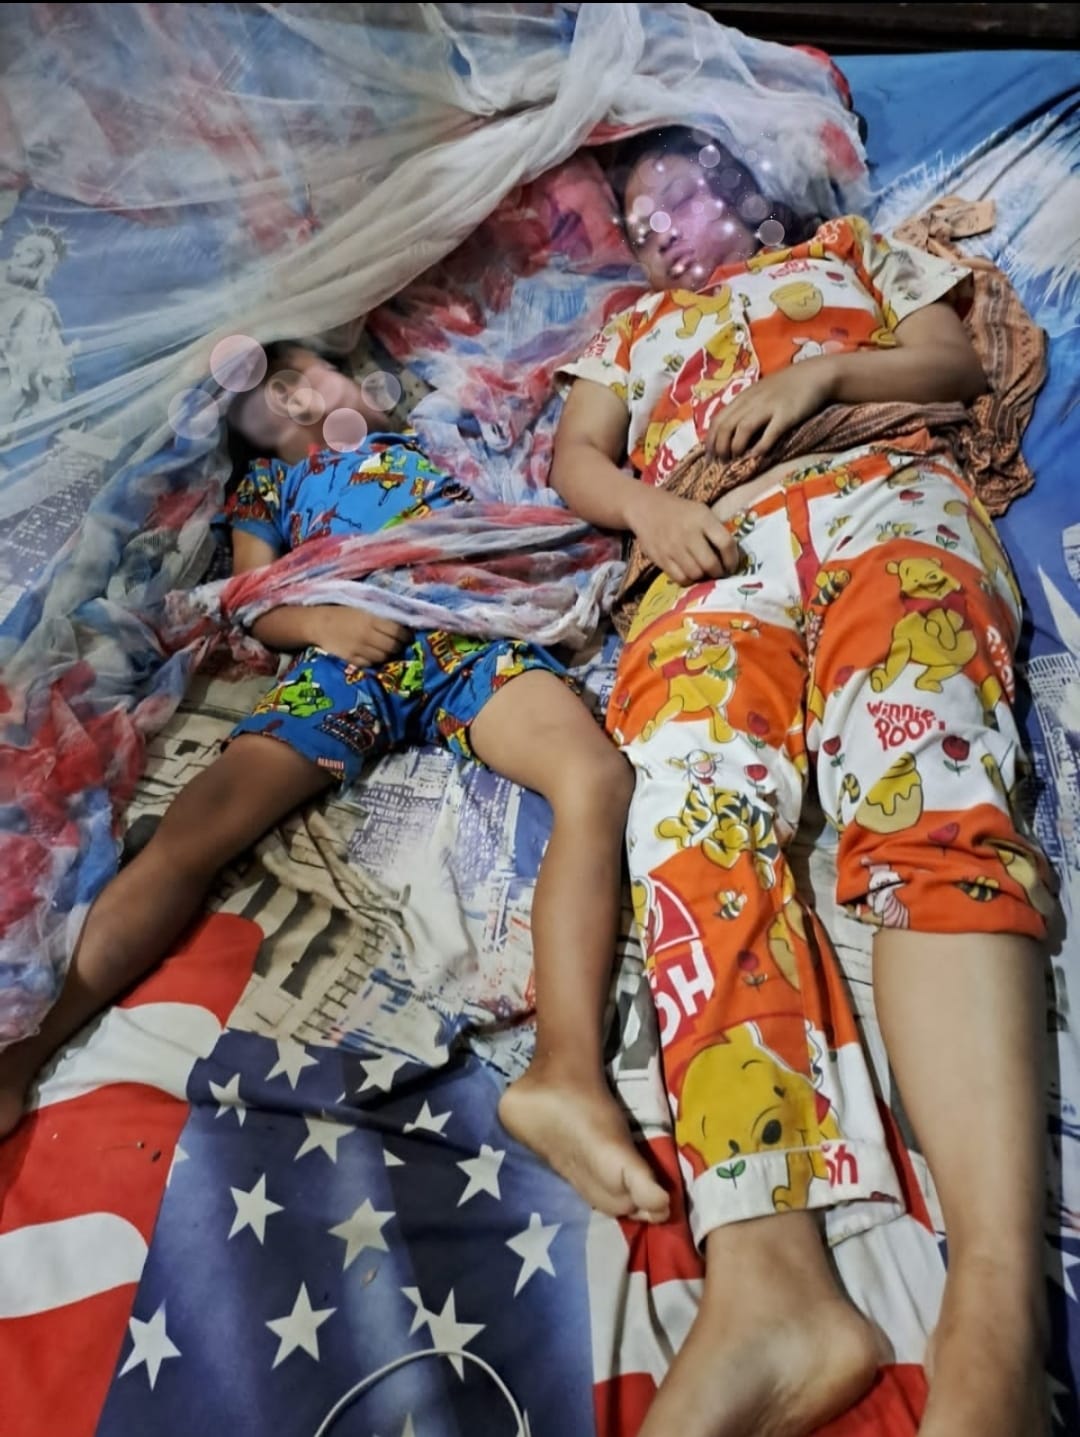 Diduga Korban Pembunuhan, Ibu Anak Ditemukan Tewas Di Tempat Tidur